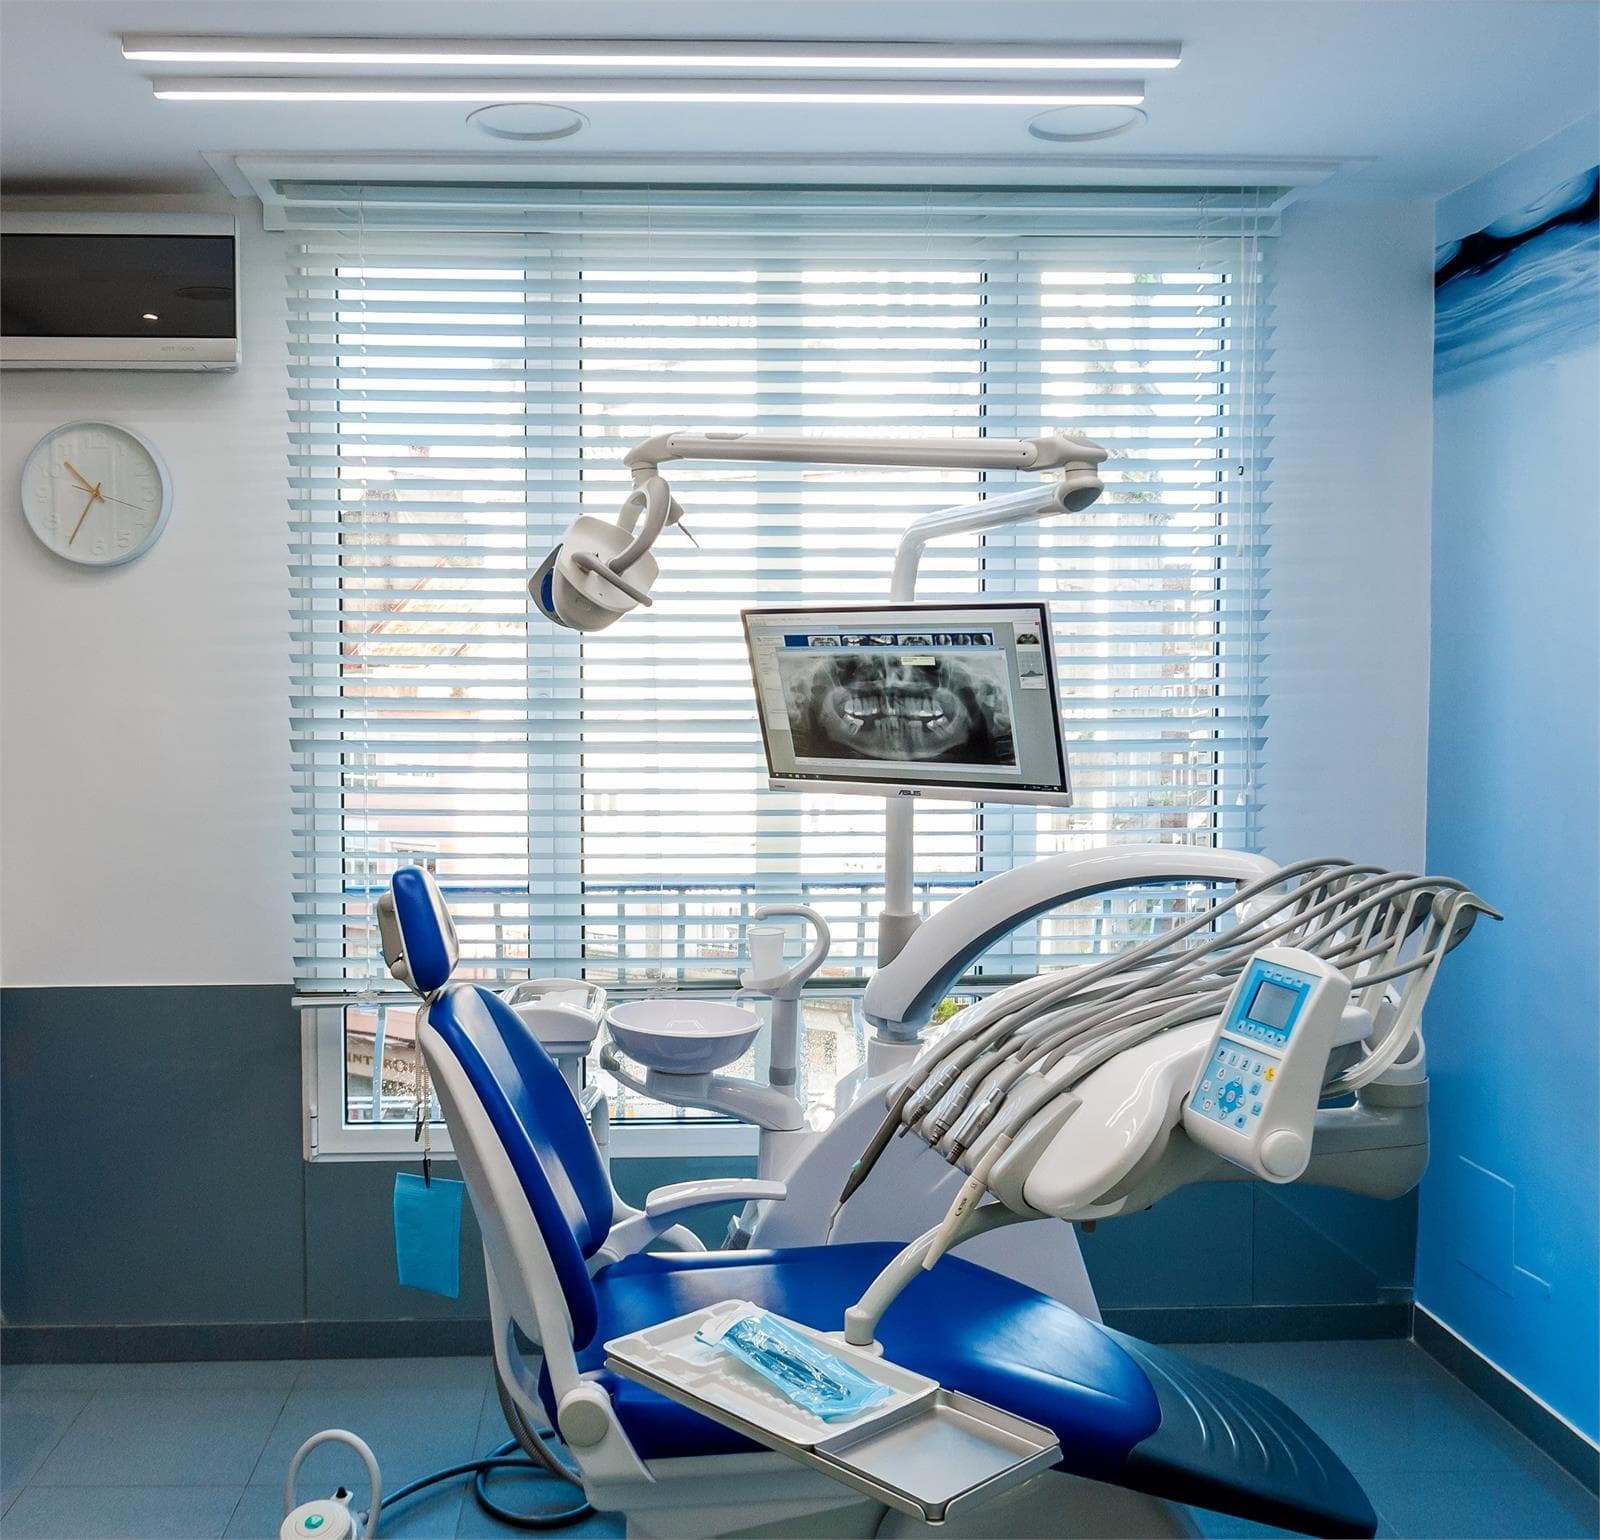 Las ventajas de los implantes dentales Straumann - Imagen 1